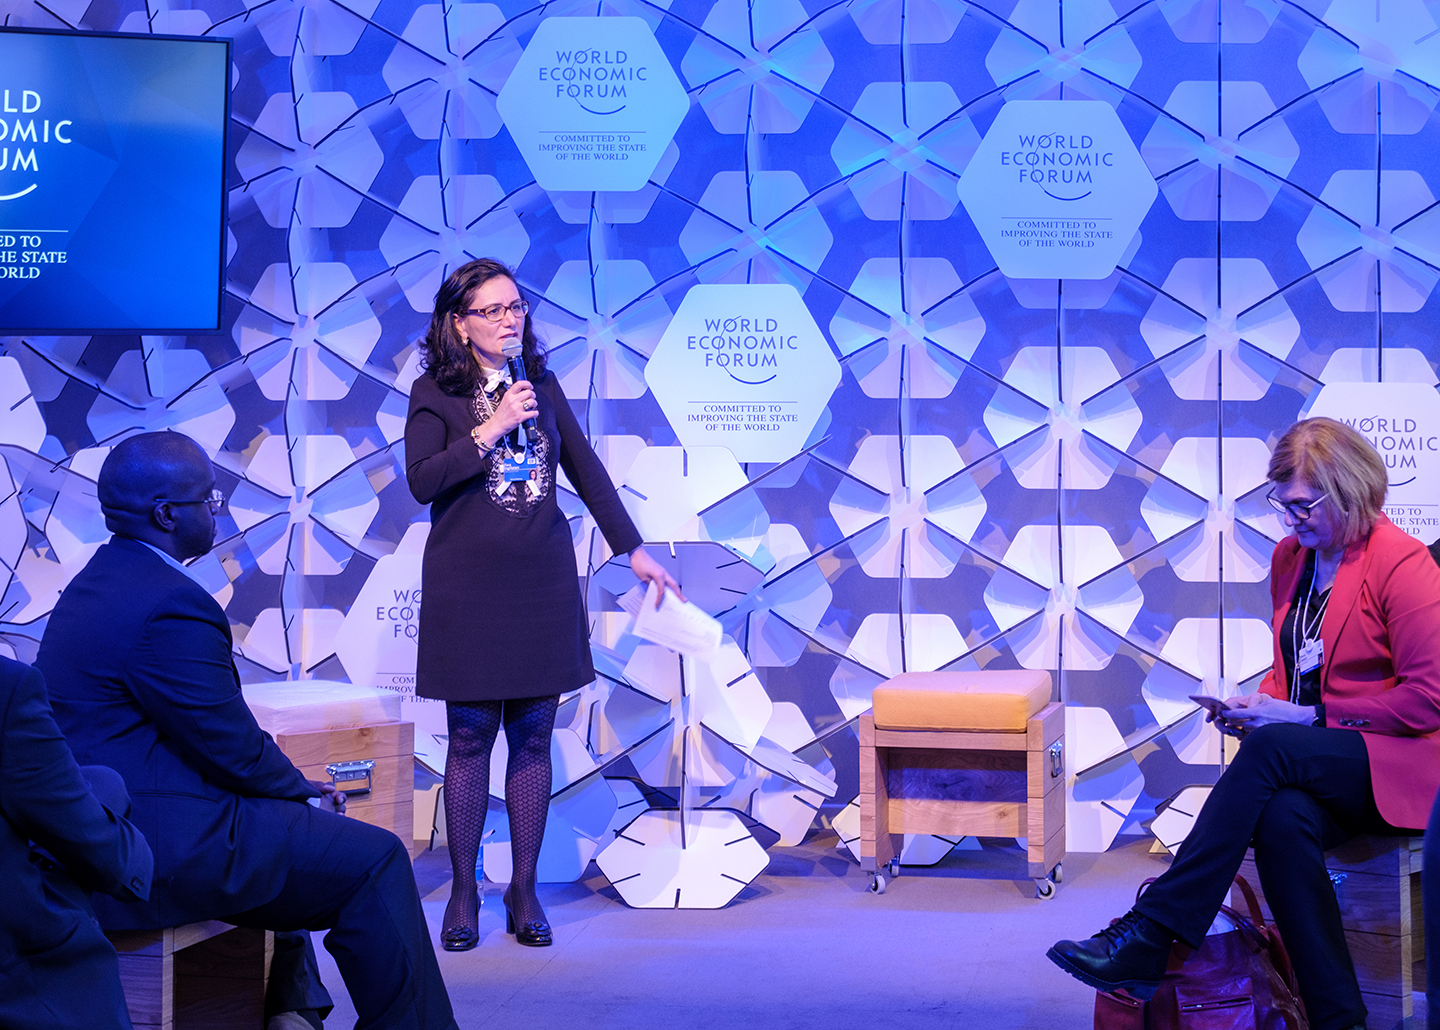 Ingilizian discusses “Online Consumer Marketplaces” at the 2018 World Economic Forum in Davos